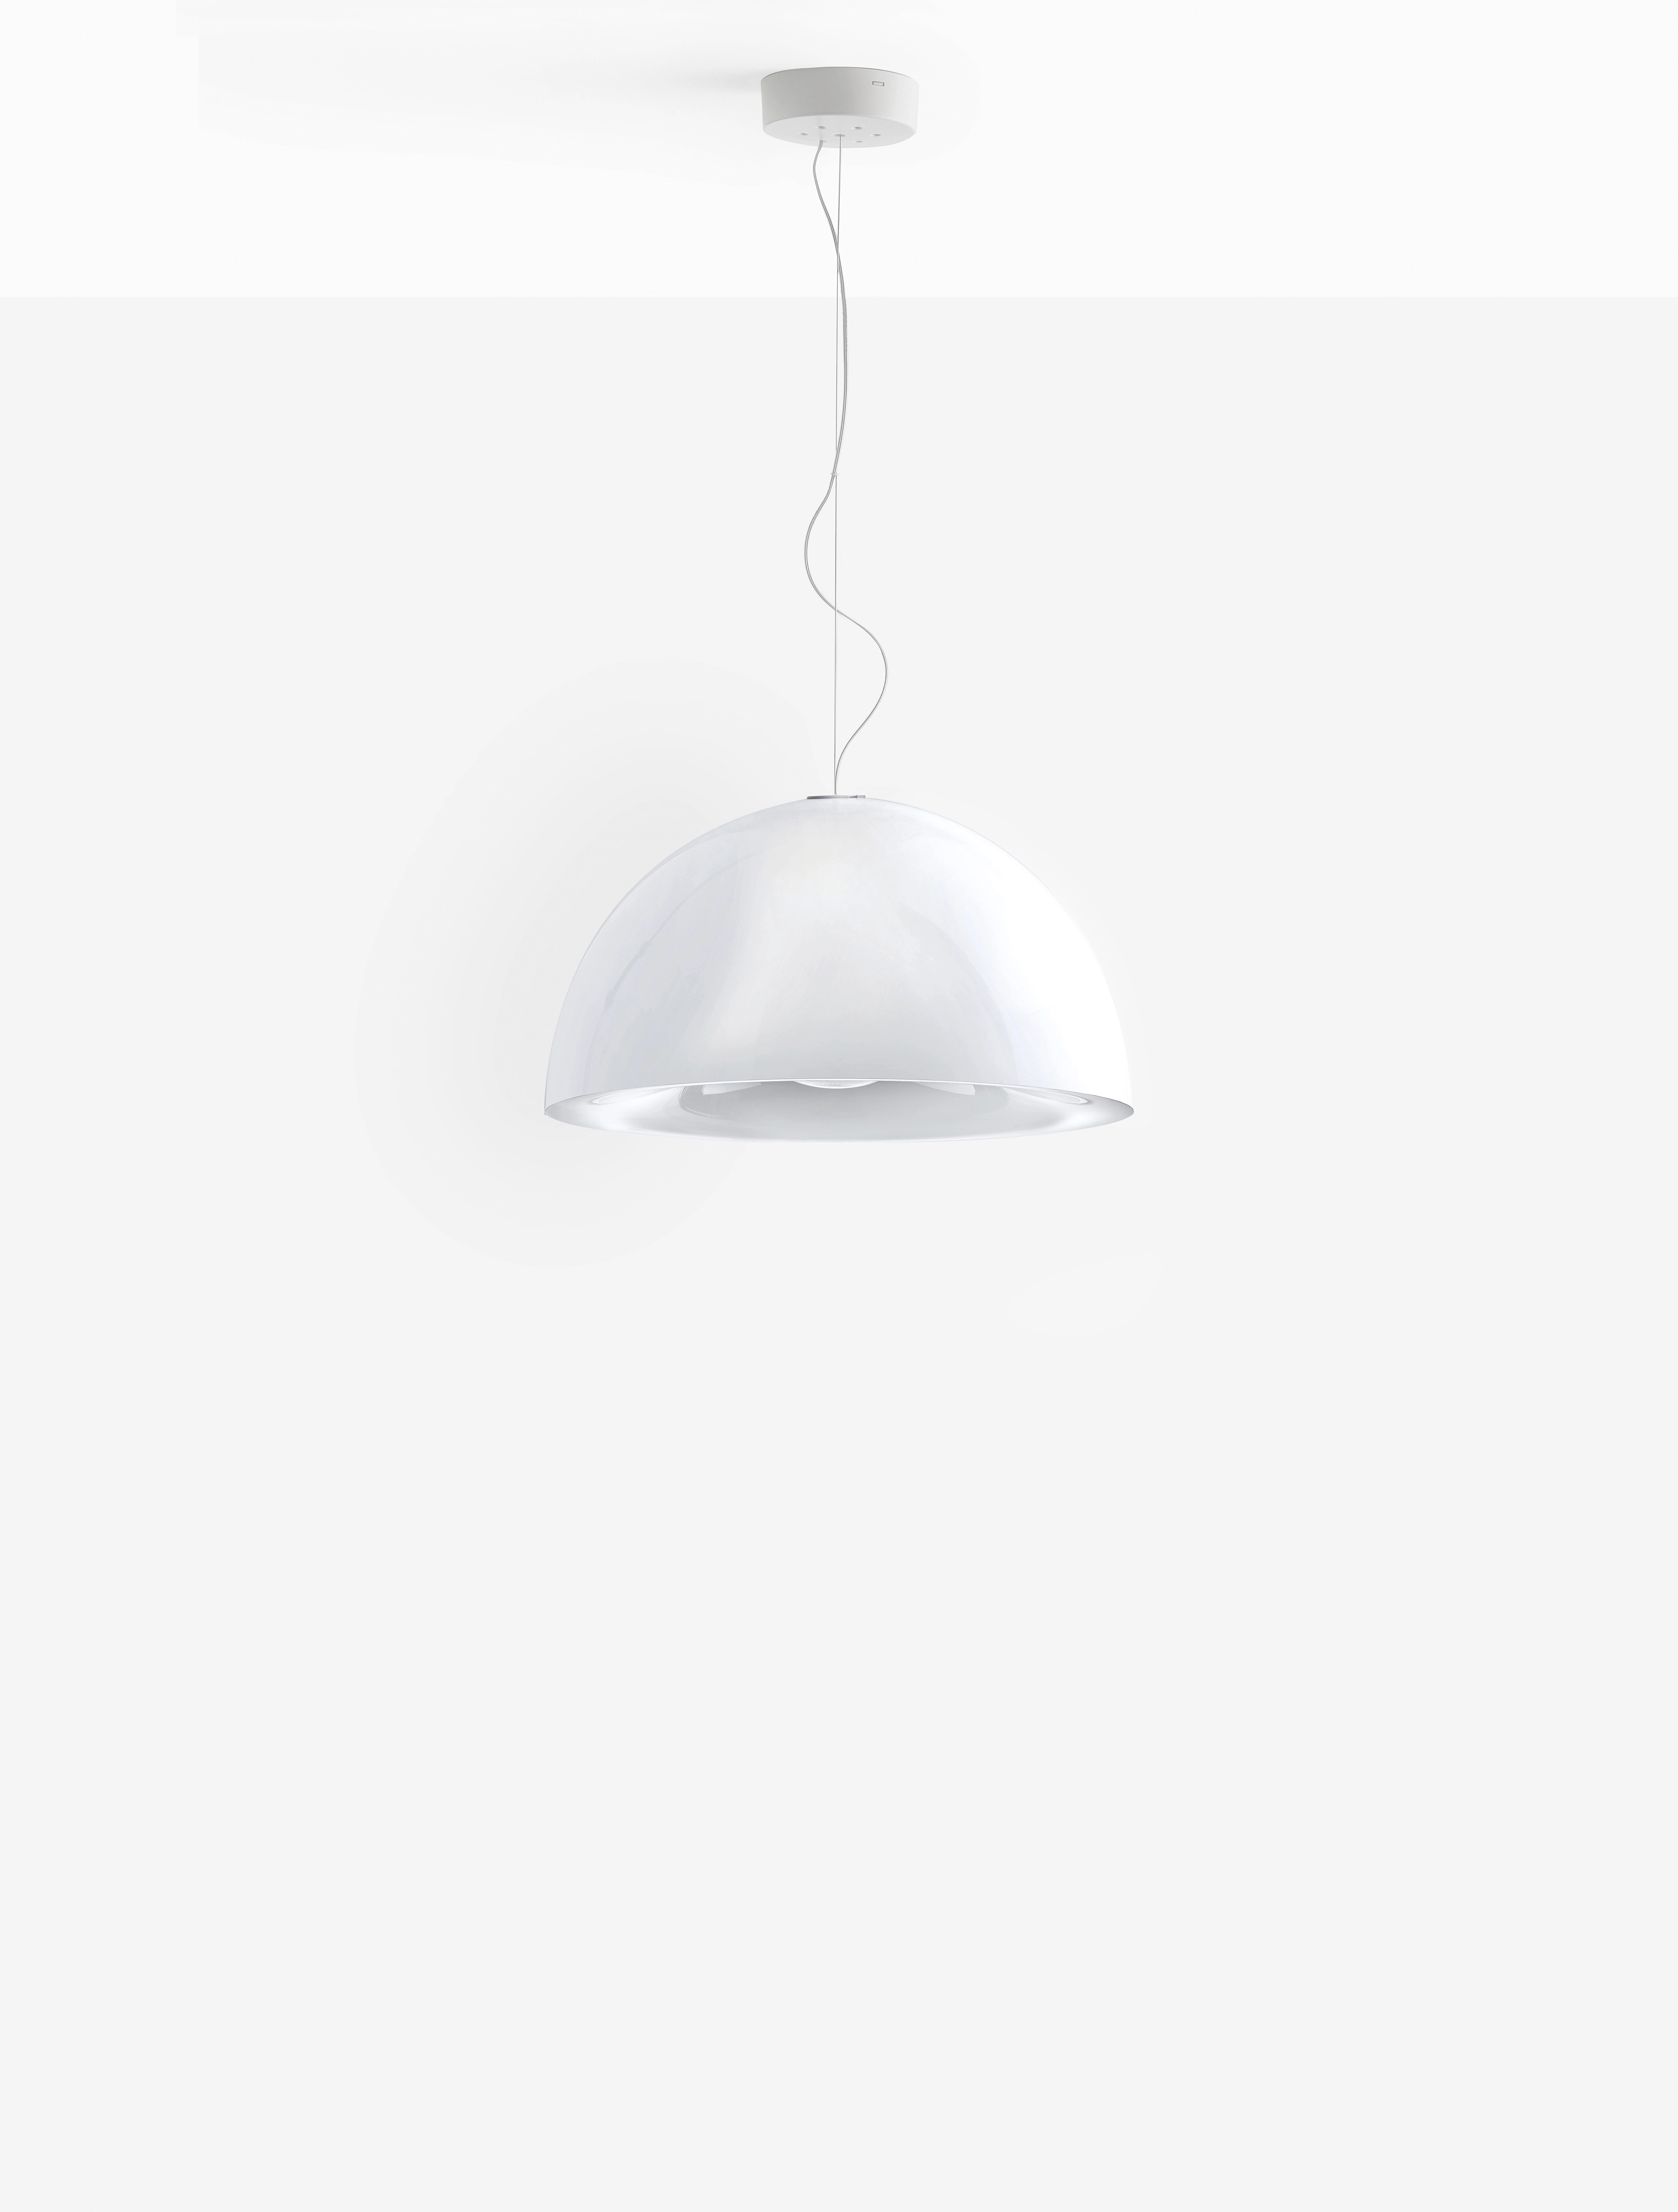 Hängelampe L002S - Design Lampe von Pedrali NE - schwarz schwarz